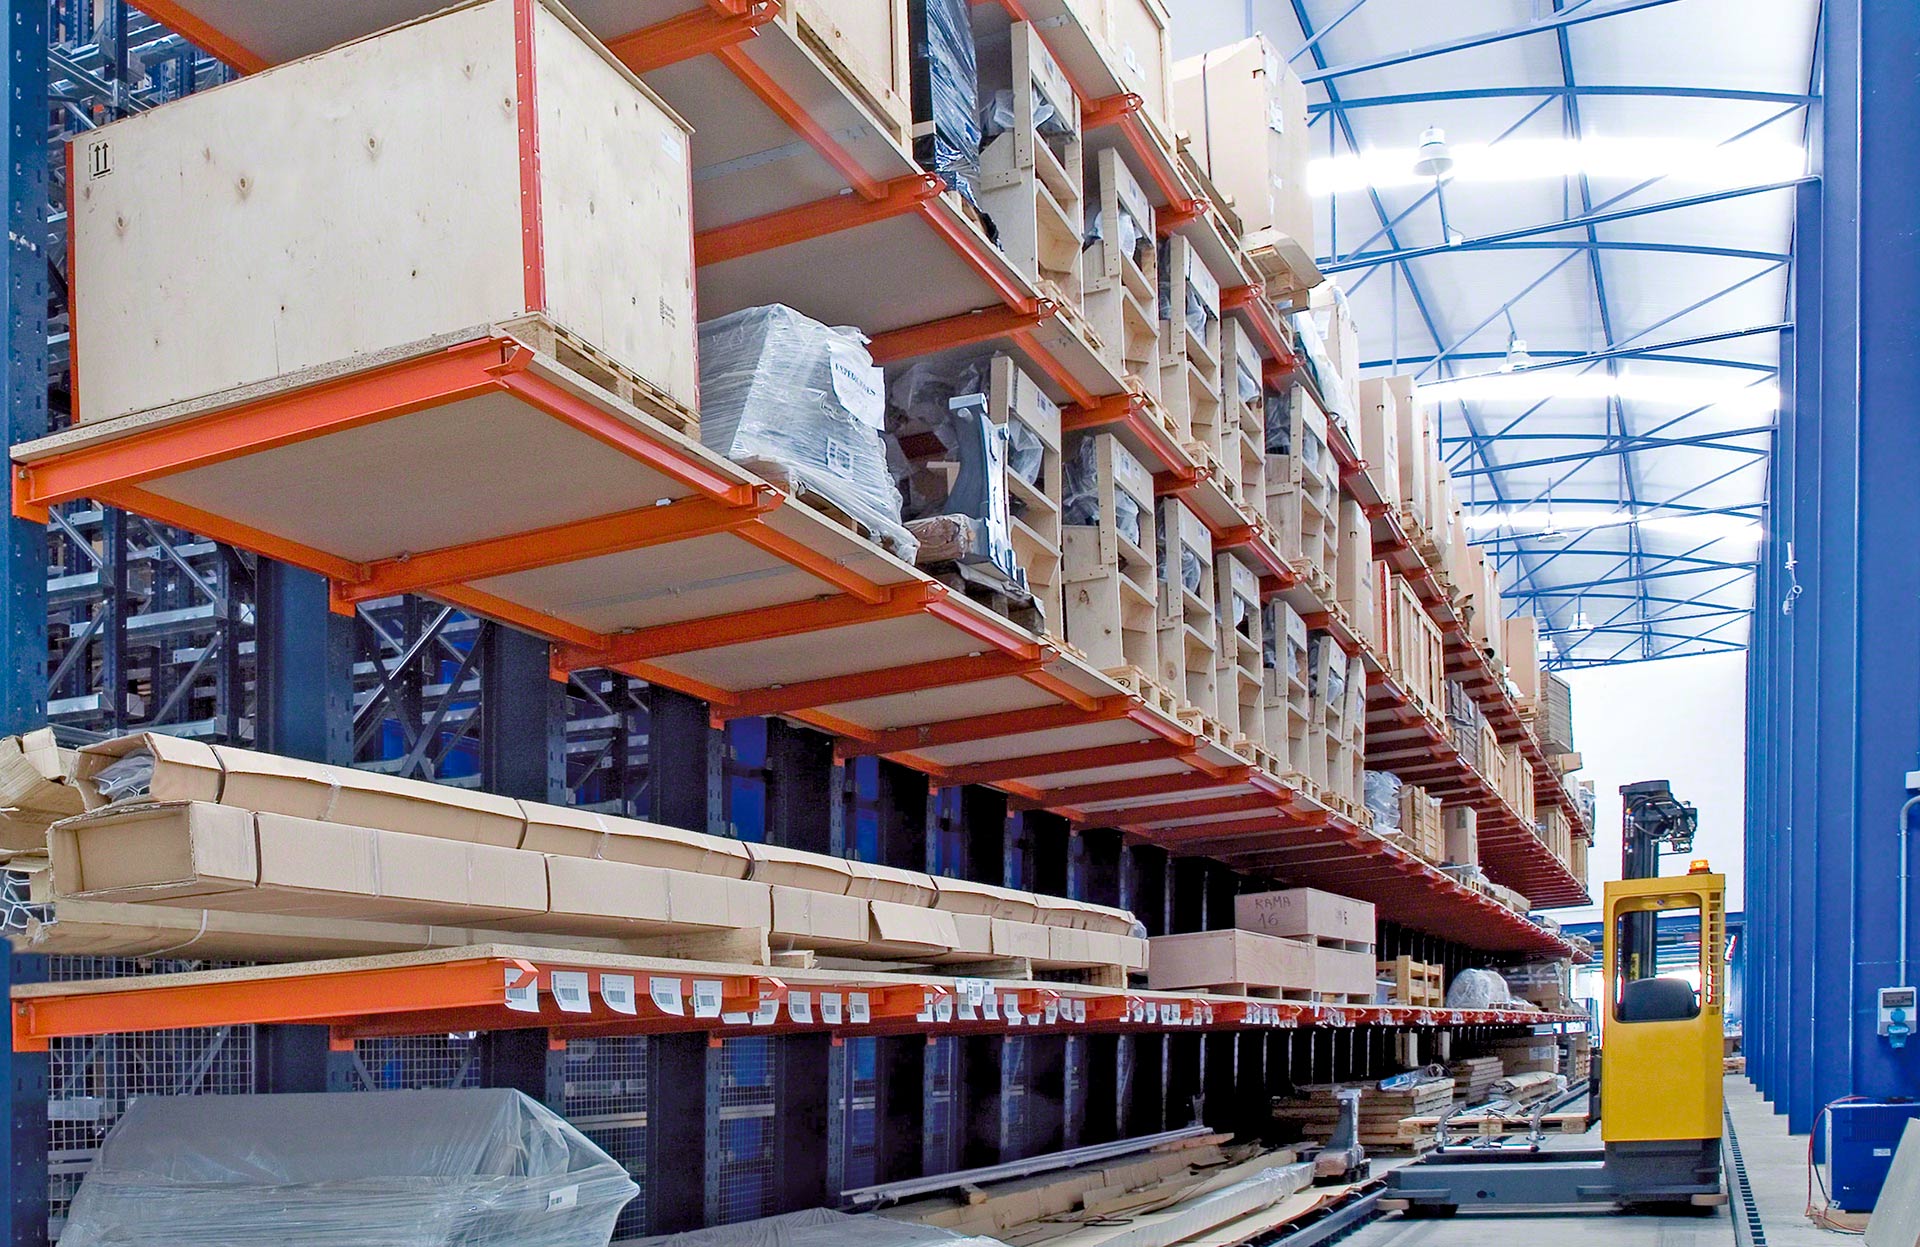 La colocación de estantes corridos de madera sobre los brazos de las cantilever permite el almacenaje de cargas paletizadas